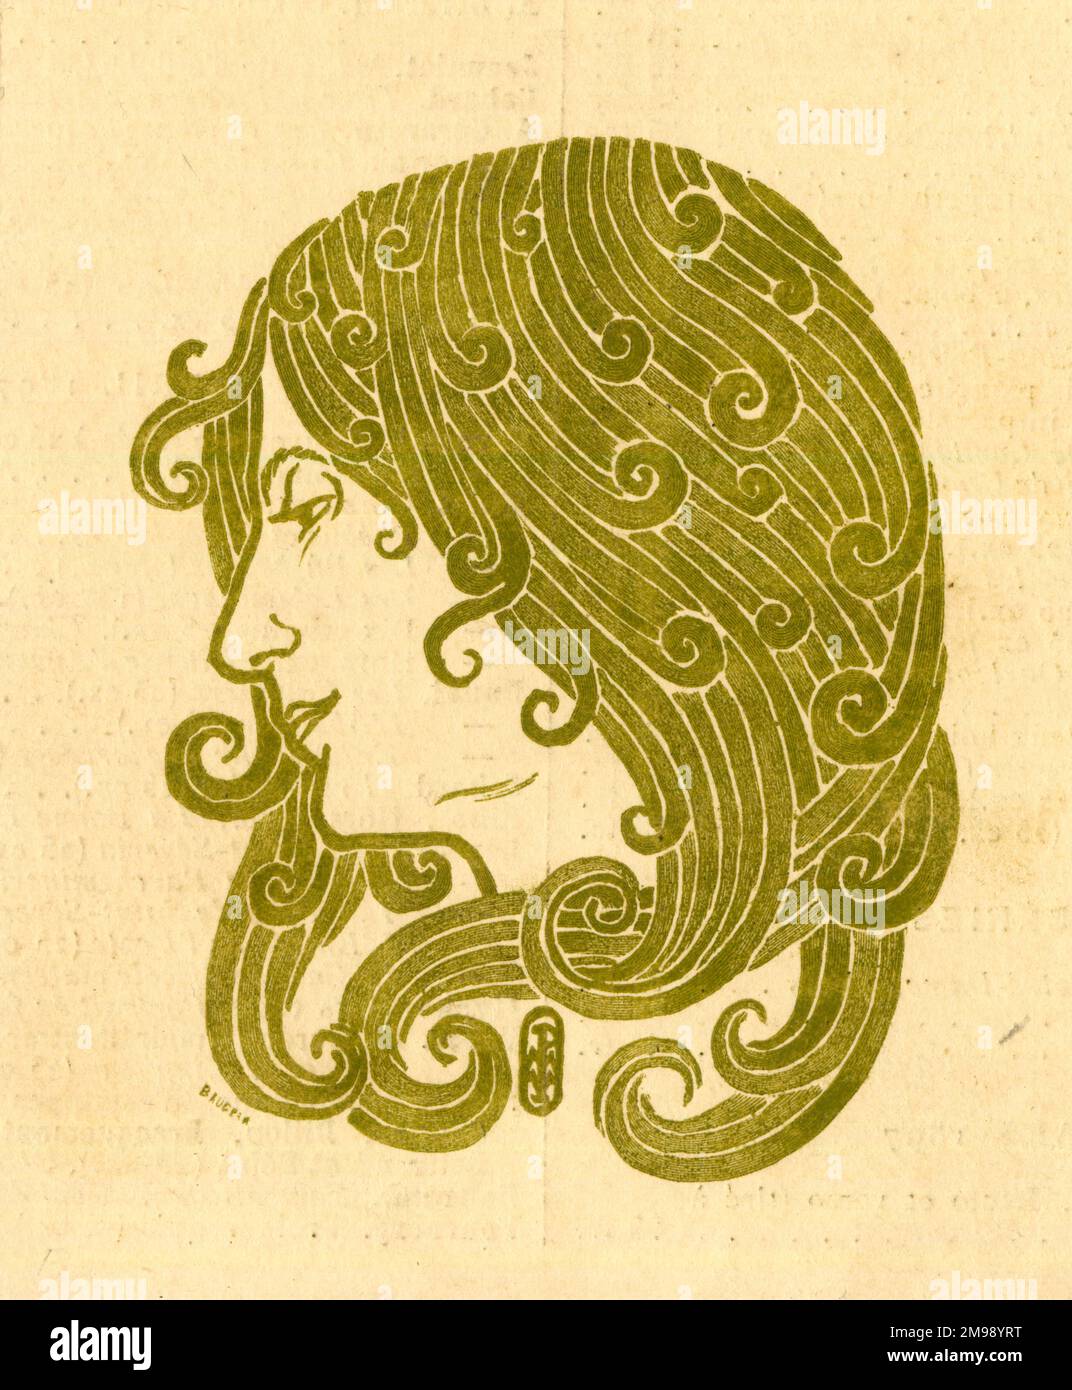 Art Nouveau style woman's head. Stock Photo